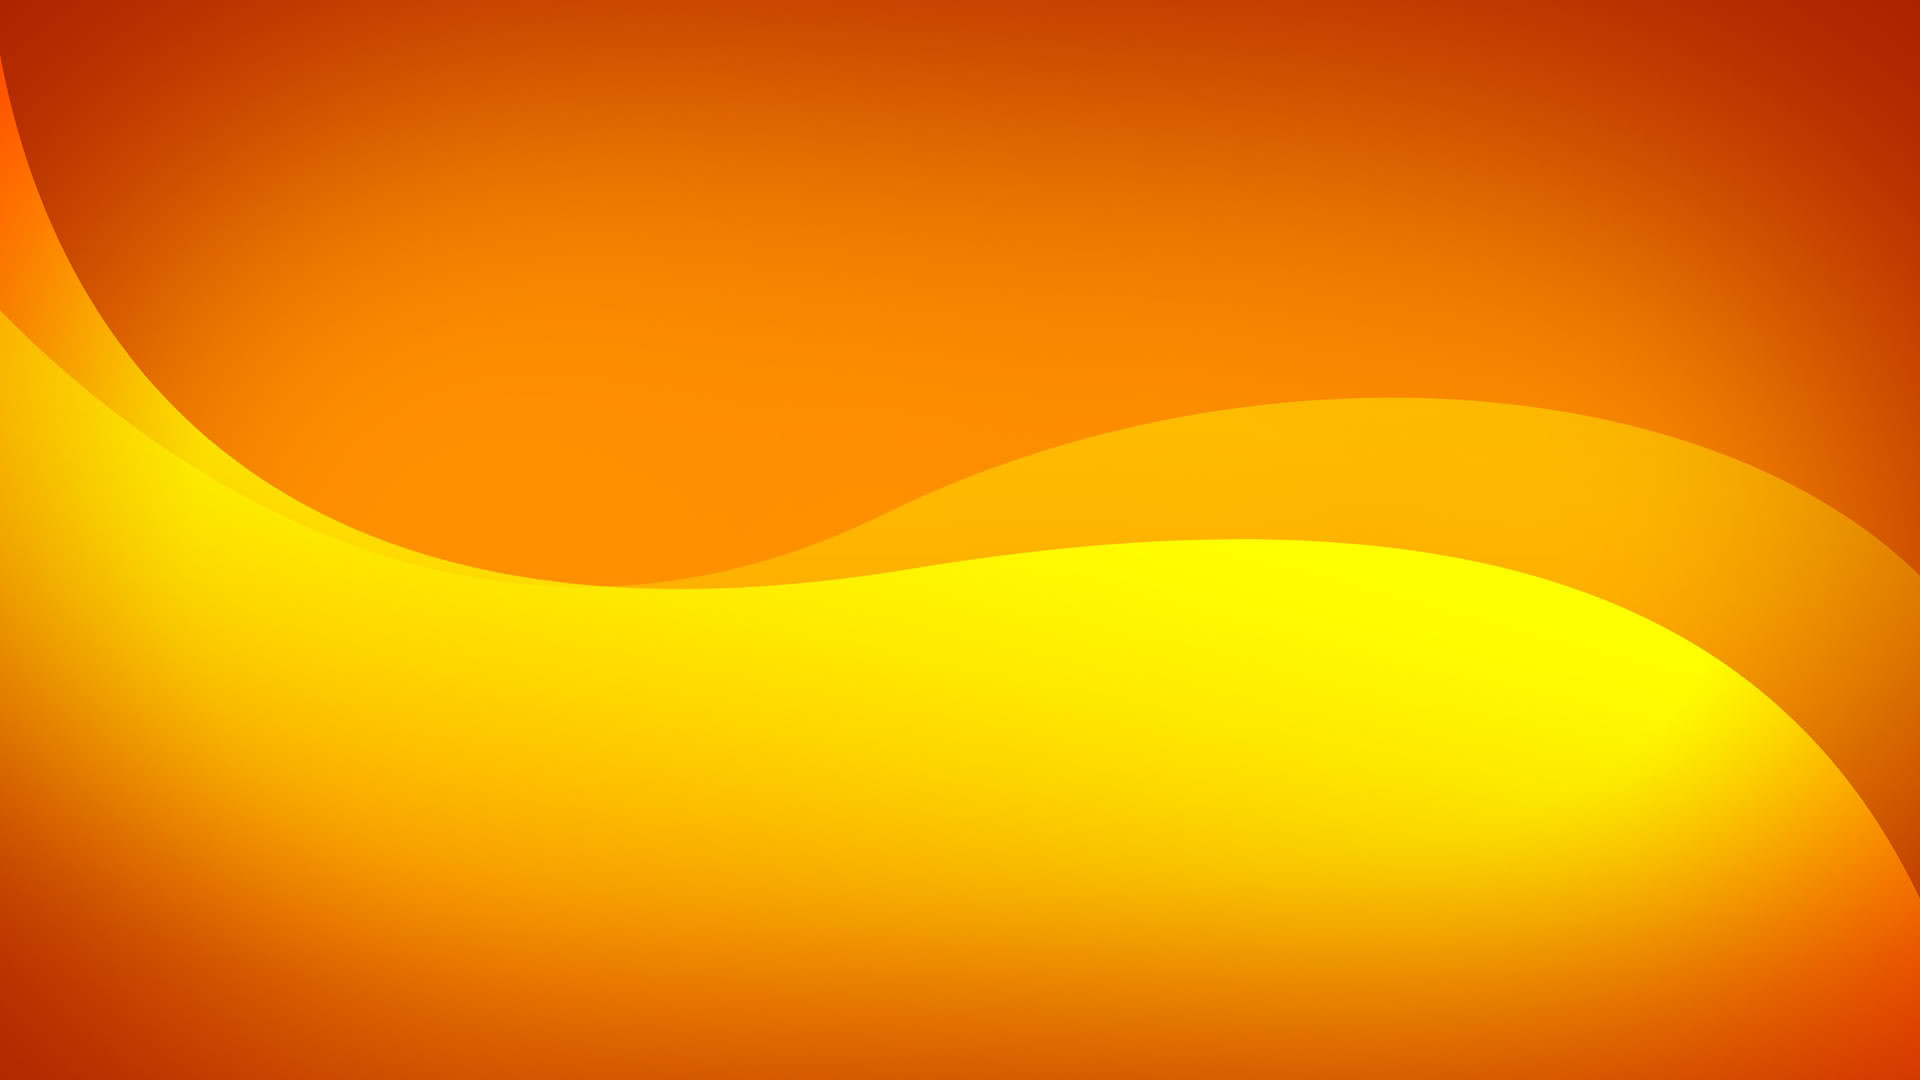 1920x1080 Explore Orange Wallpaper, Orange Orange, and more!